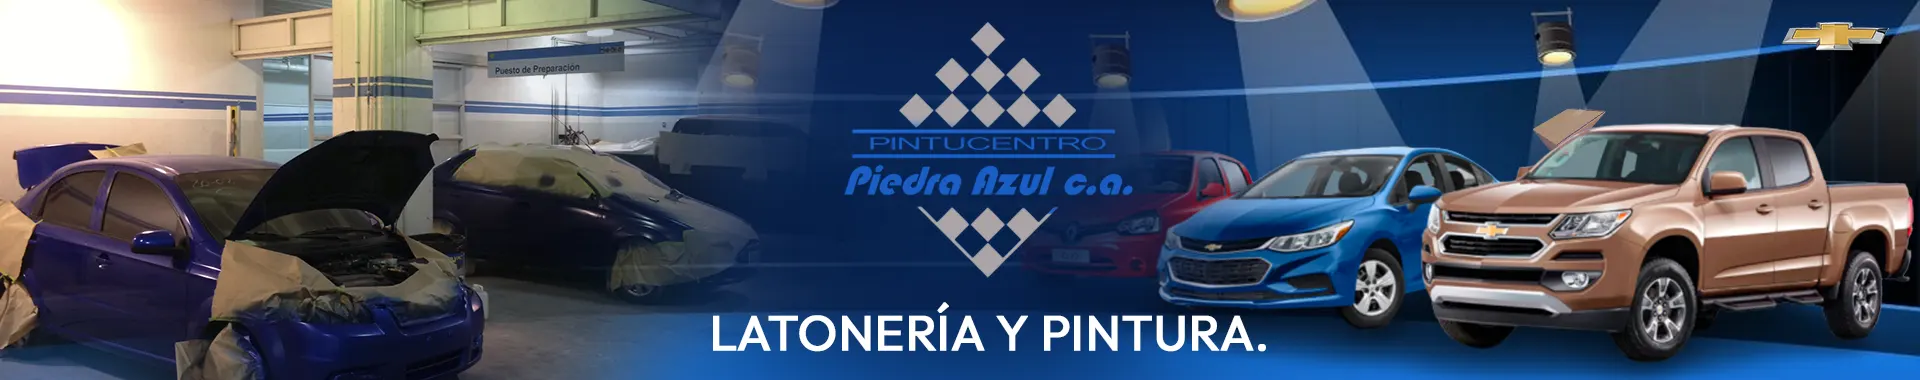 Imagen 1 del perfil de Pintucentro Piedra Azul